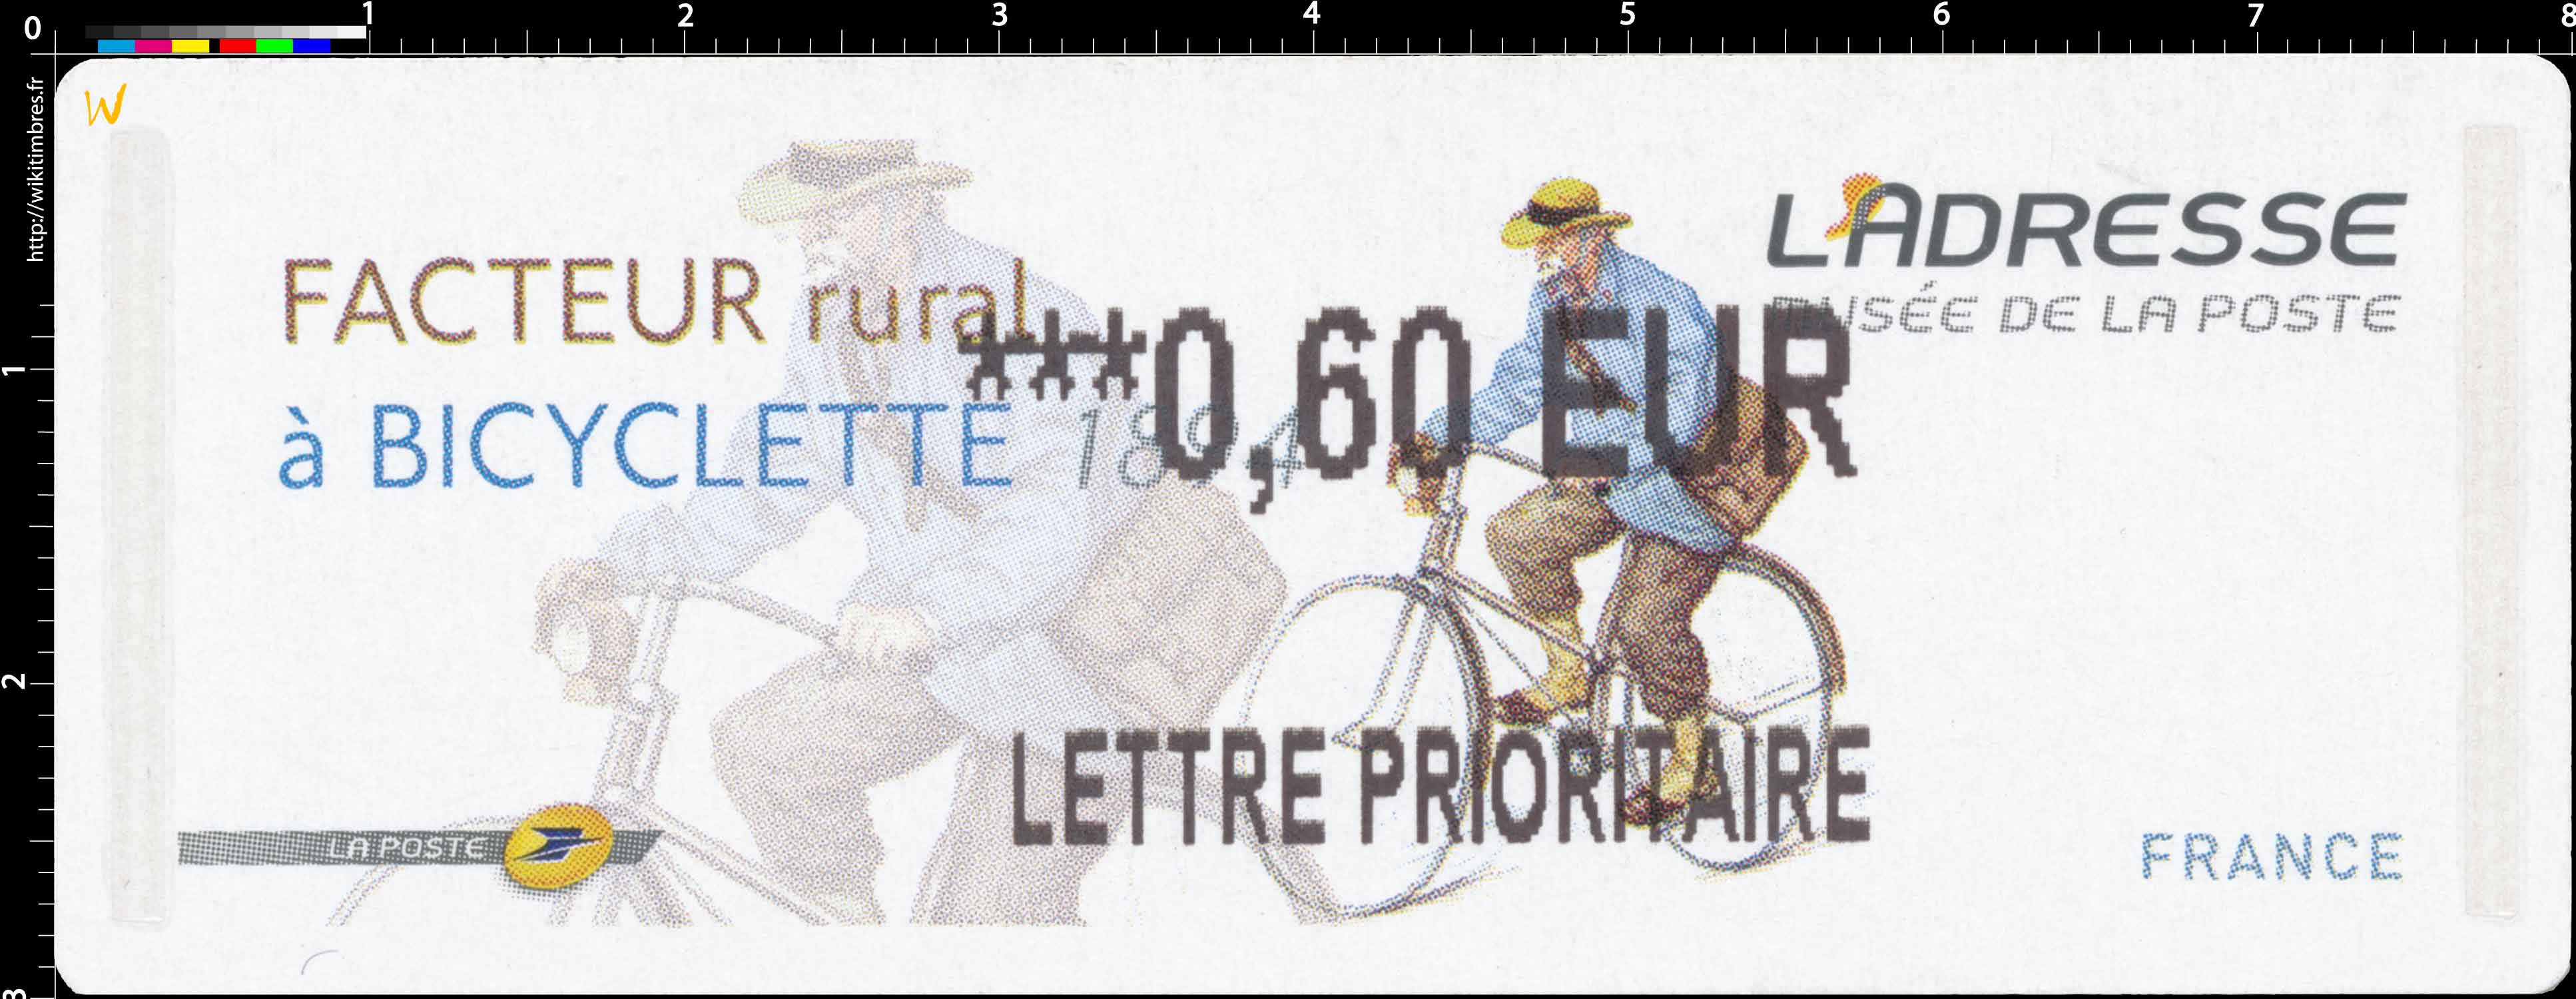 Facteur rural à Bicyclette 1894 L'adresse musée de La Poste